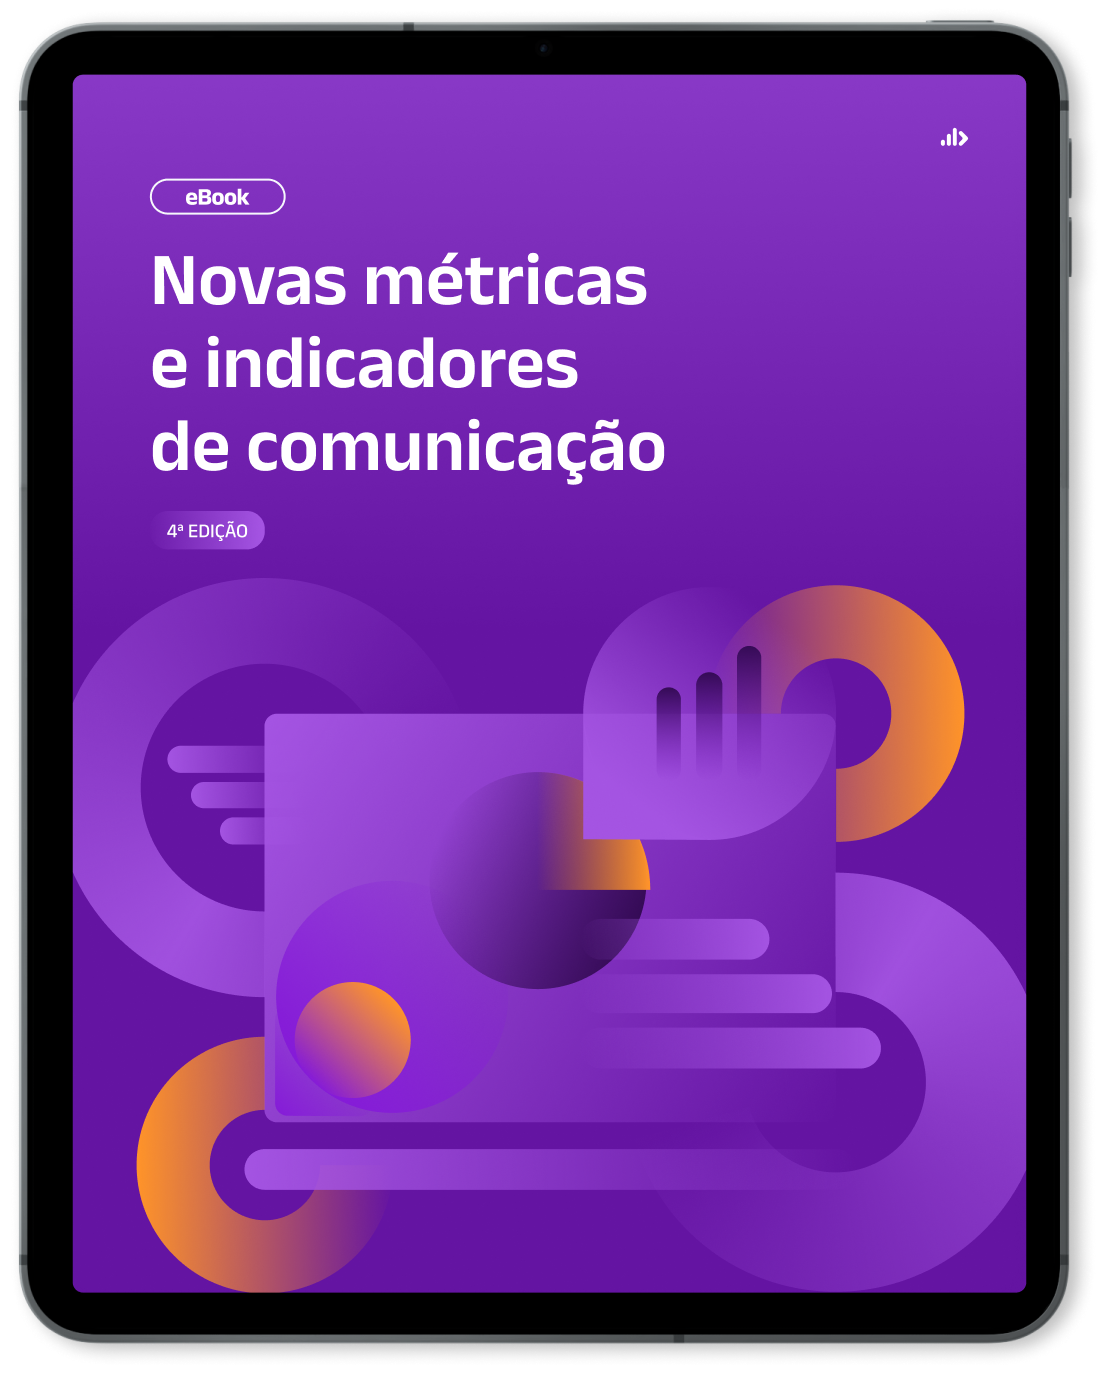 Mockup de Tablet com capa do Ebook - Novas métricas e indicadores de comunicação - 4a edição